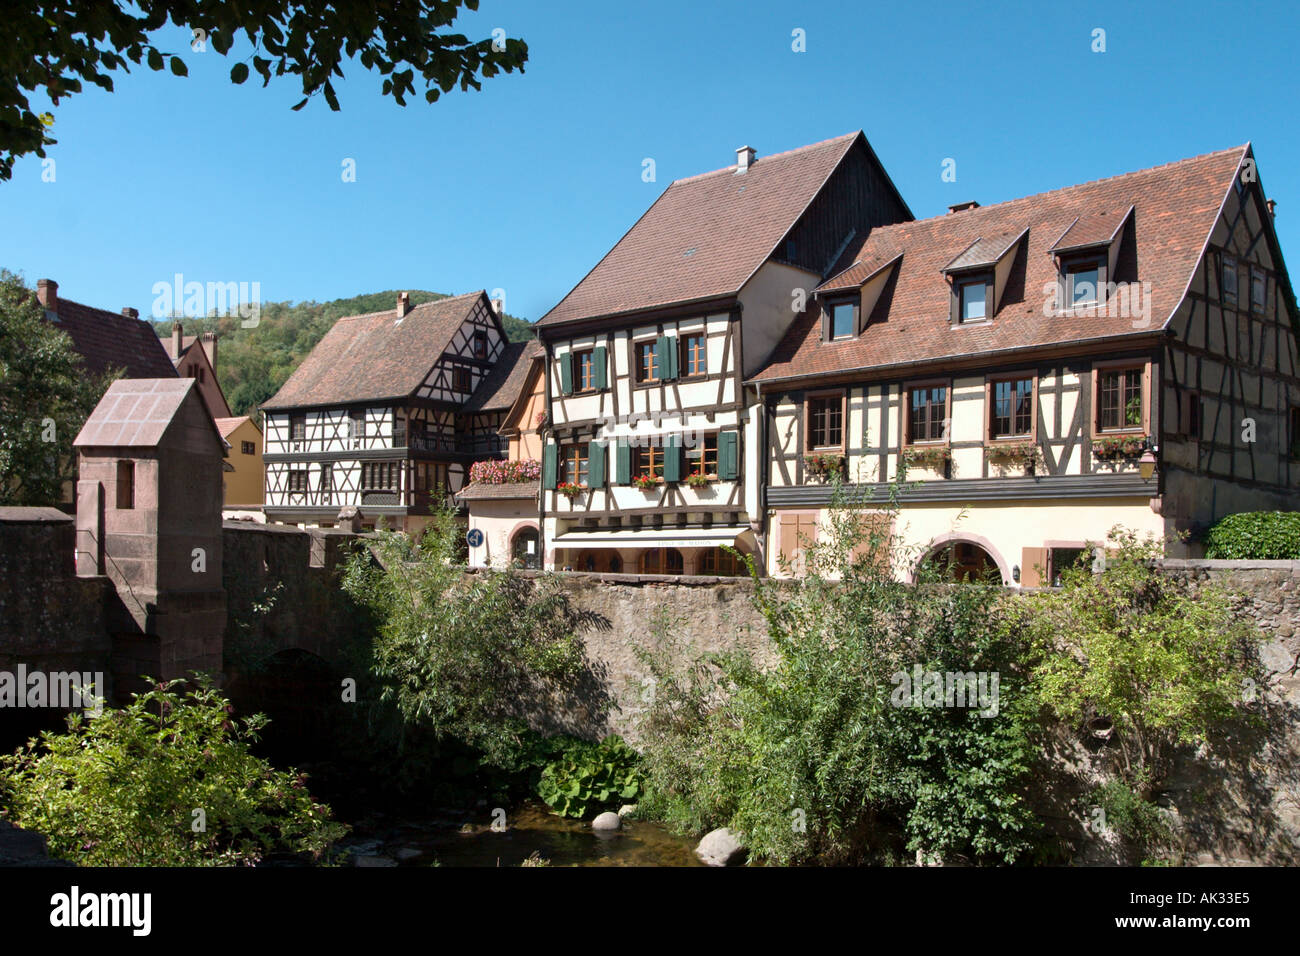 Traditionelle Häuser durch die befestigte Brücke, Kayserberg, Elsass, Frankreich Stockfoto